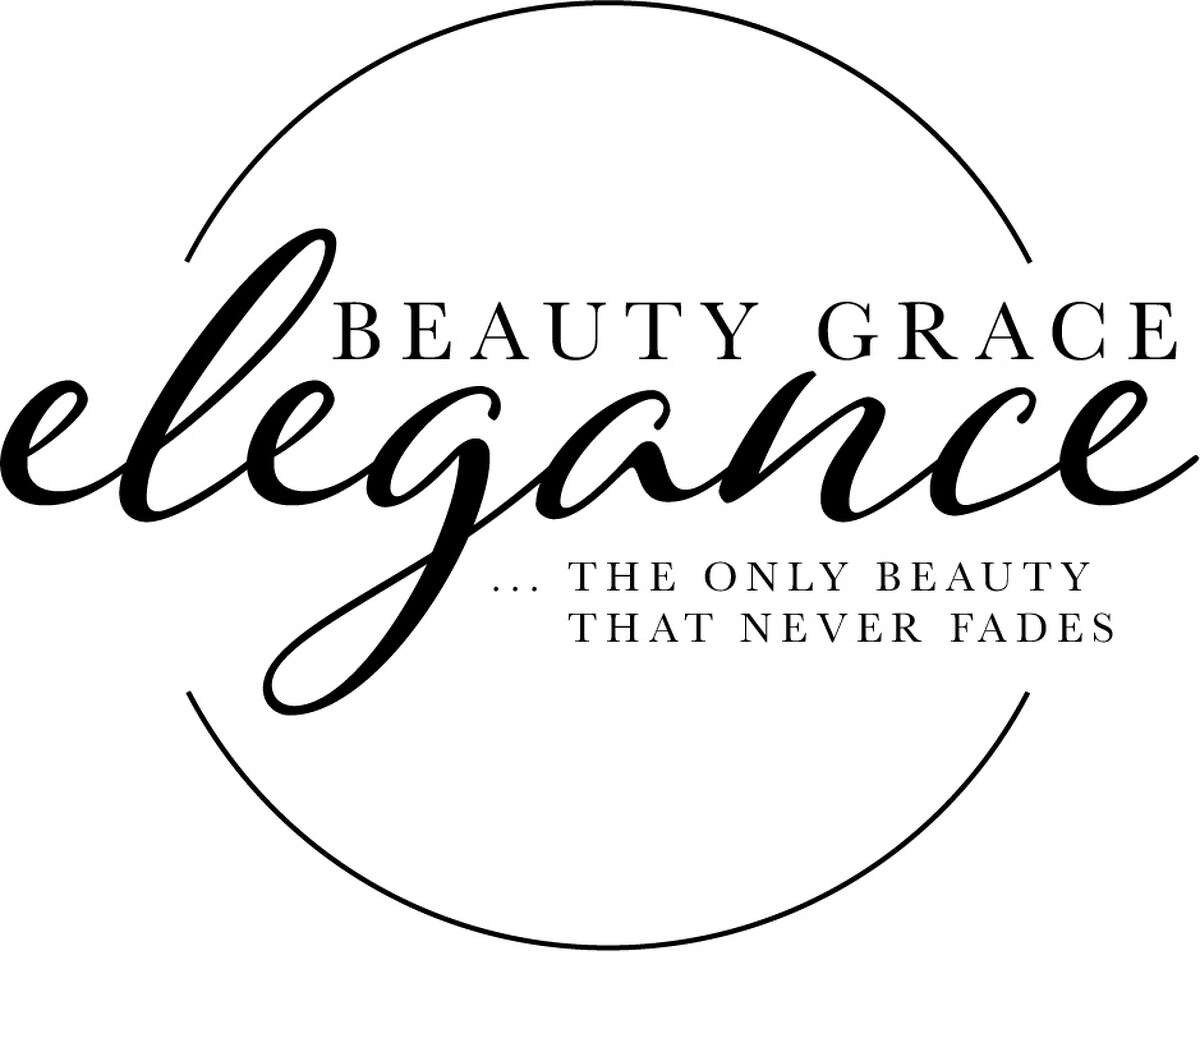 "Beauty, Grace, Elegance"